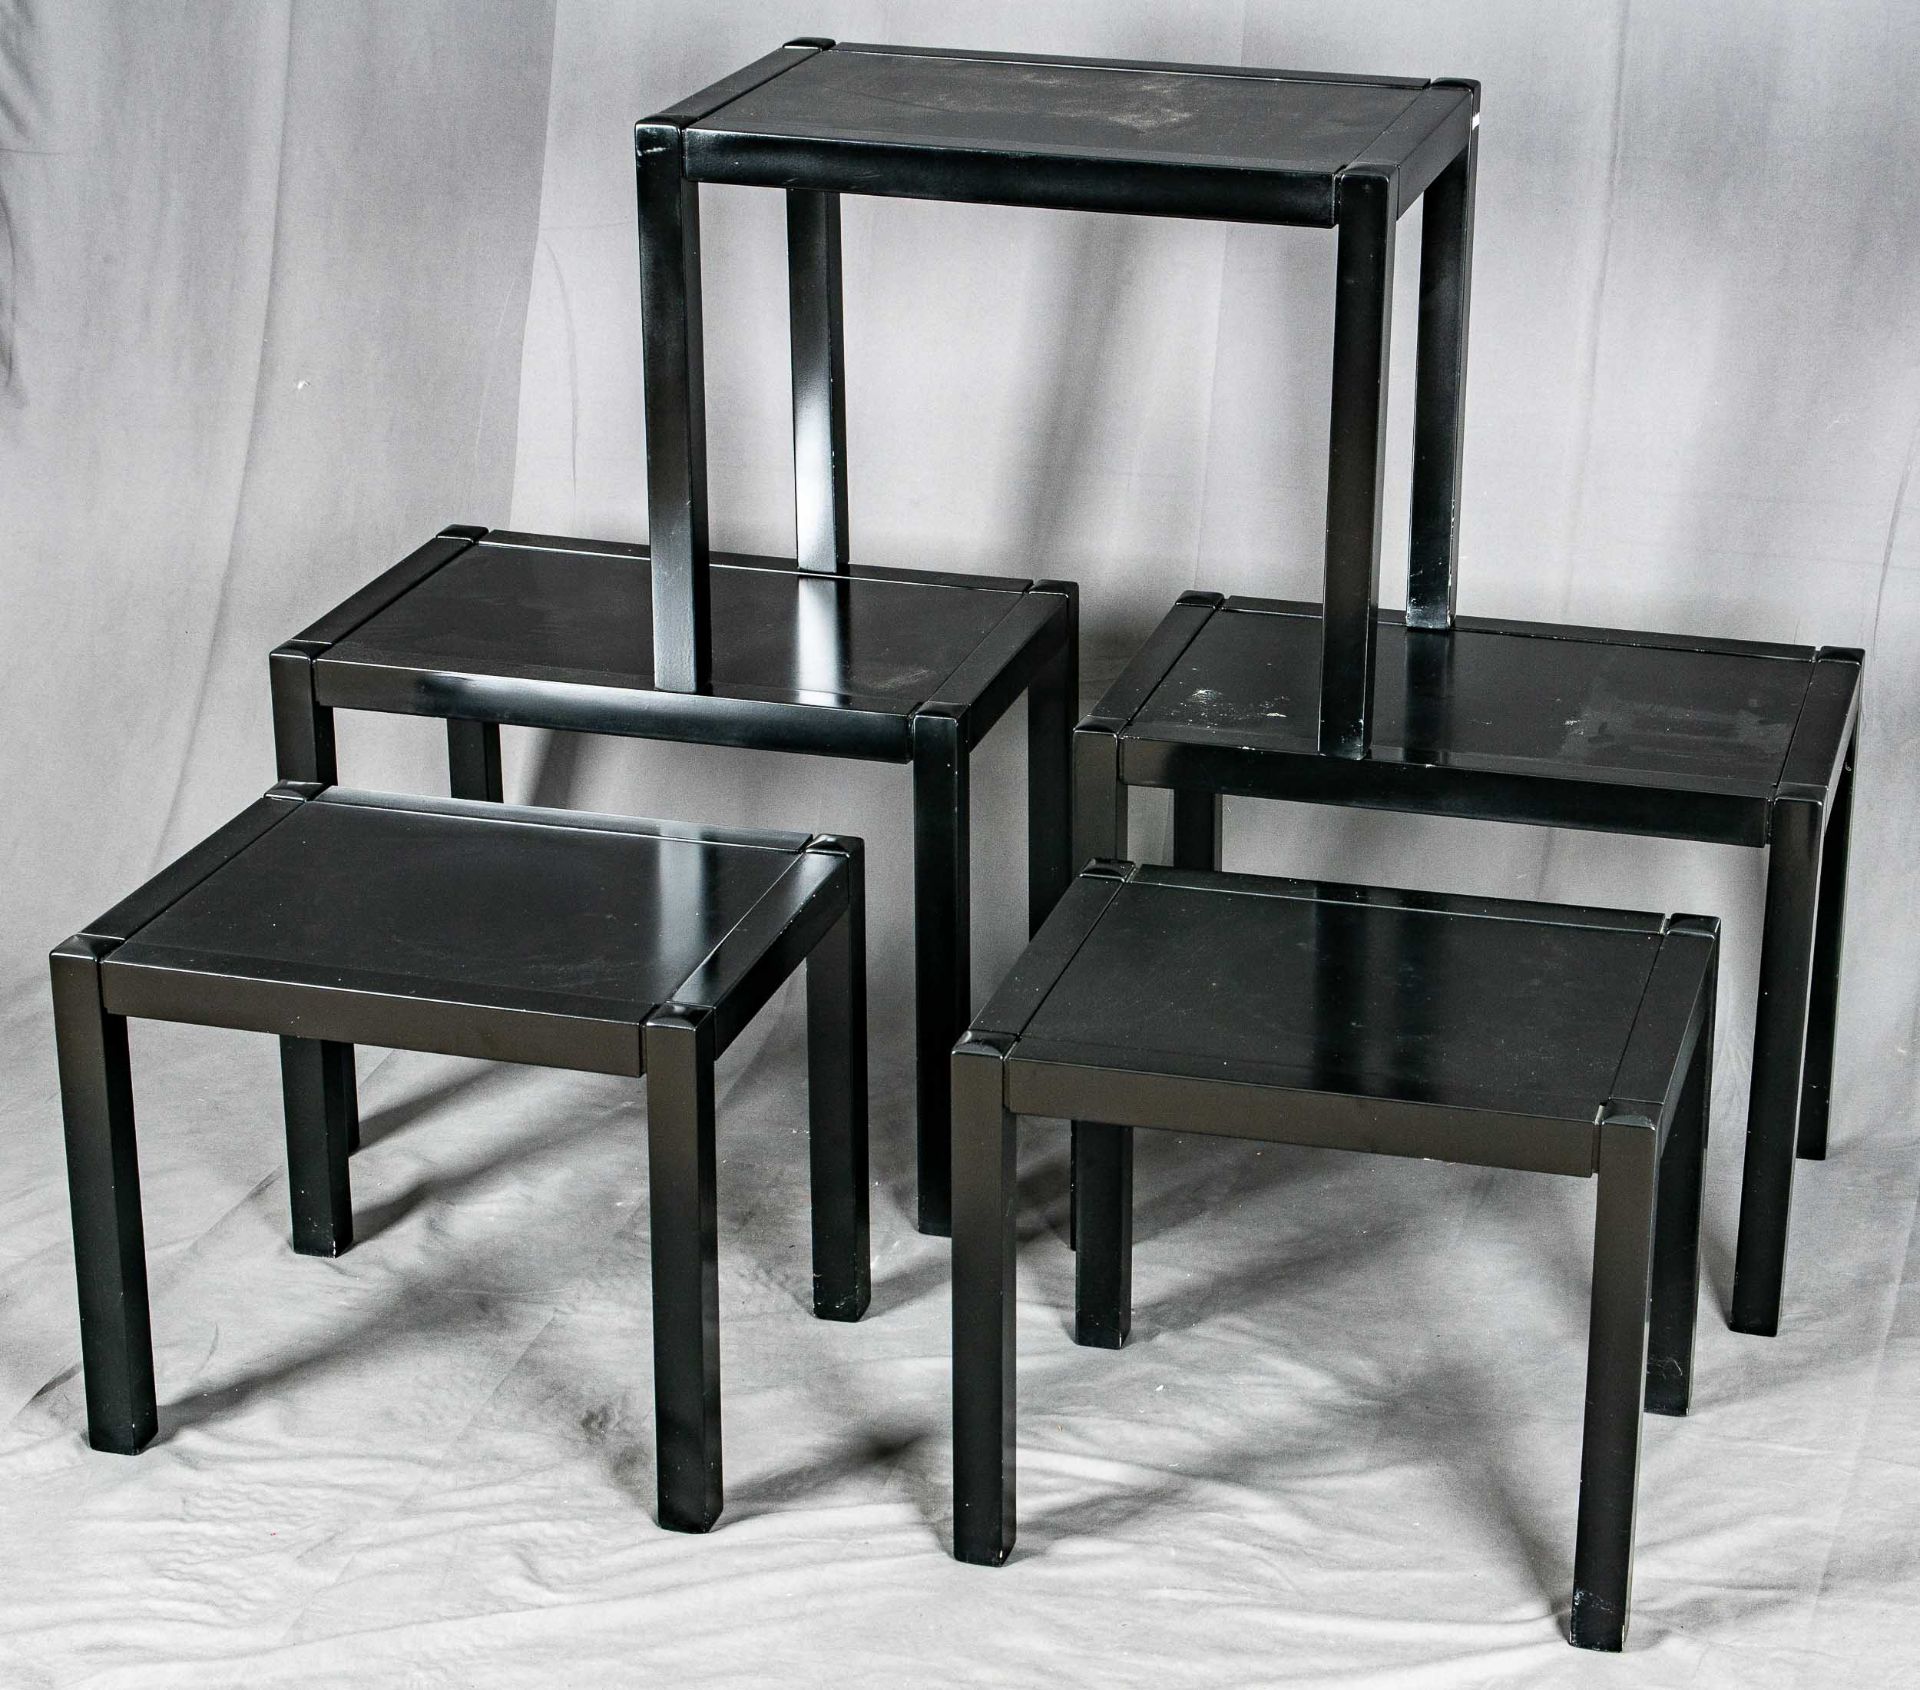 5 Beistelltische in 2 Größen, rechteckig, schwarz lackiertes Holz mit eingesetzter Tischplatte, des - Image 3 of 4